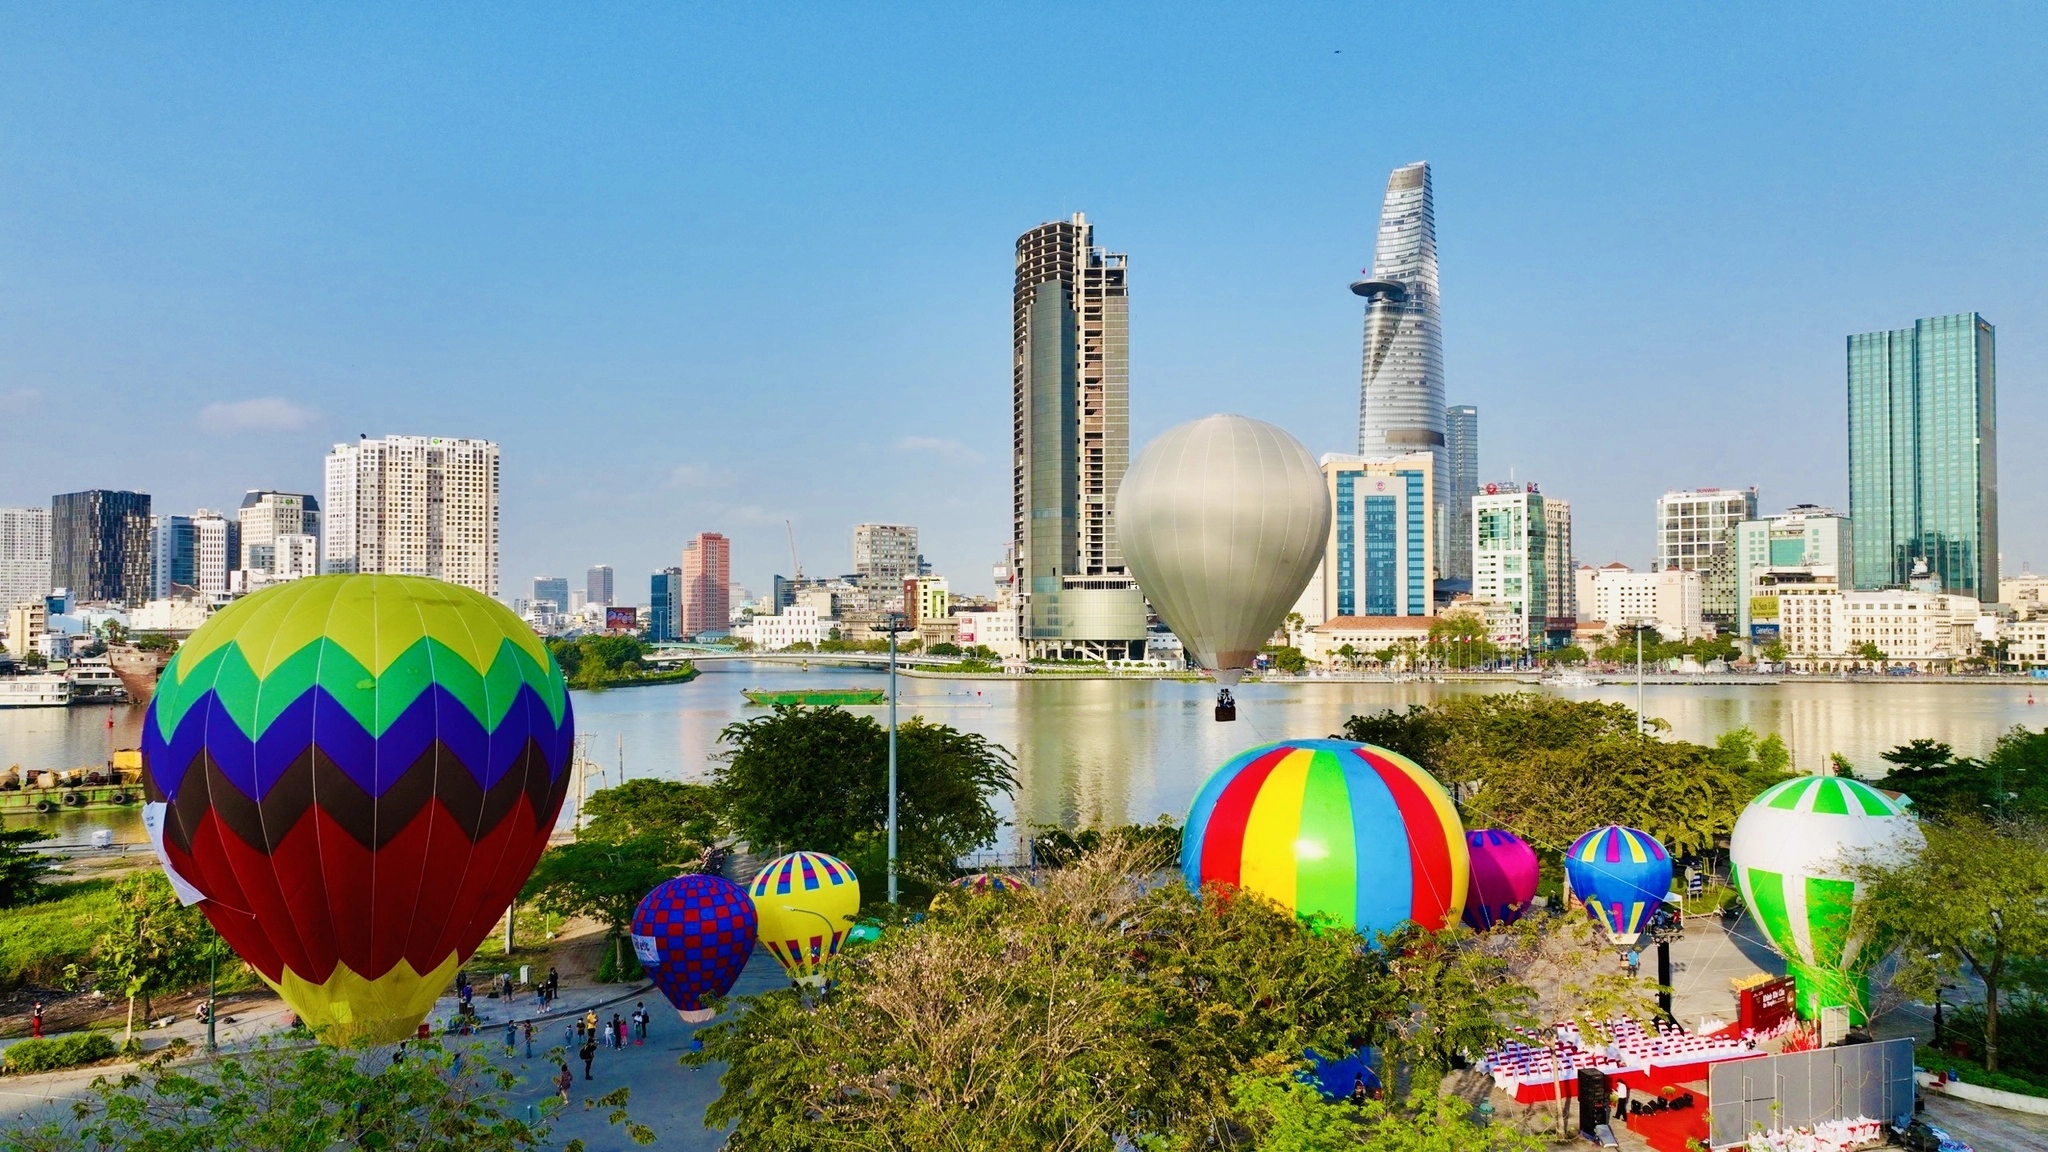 Lễ hội khinh khí cầu ngắm Sài Gòn sắp diễn ra vào tháng 12/2022 